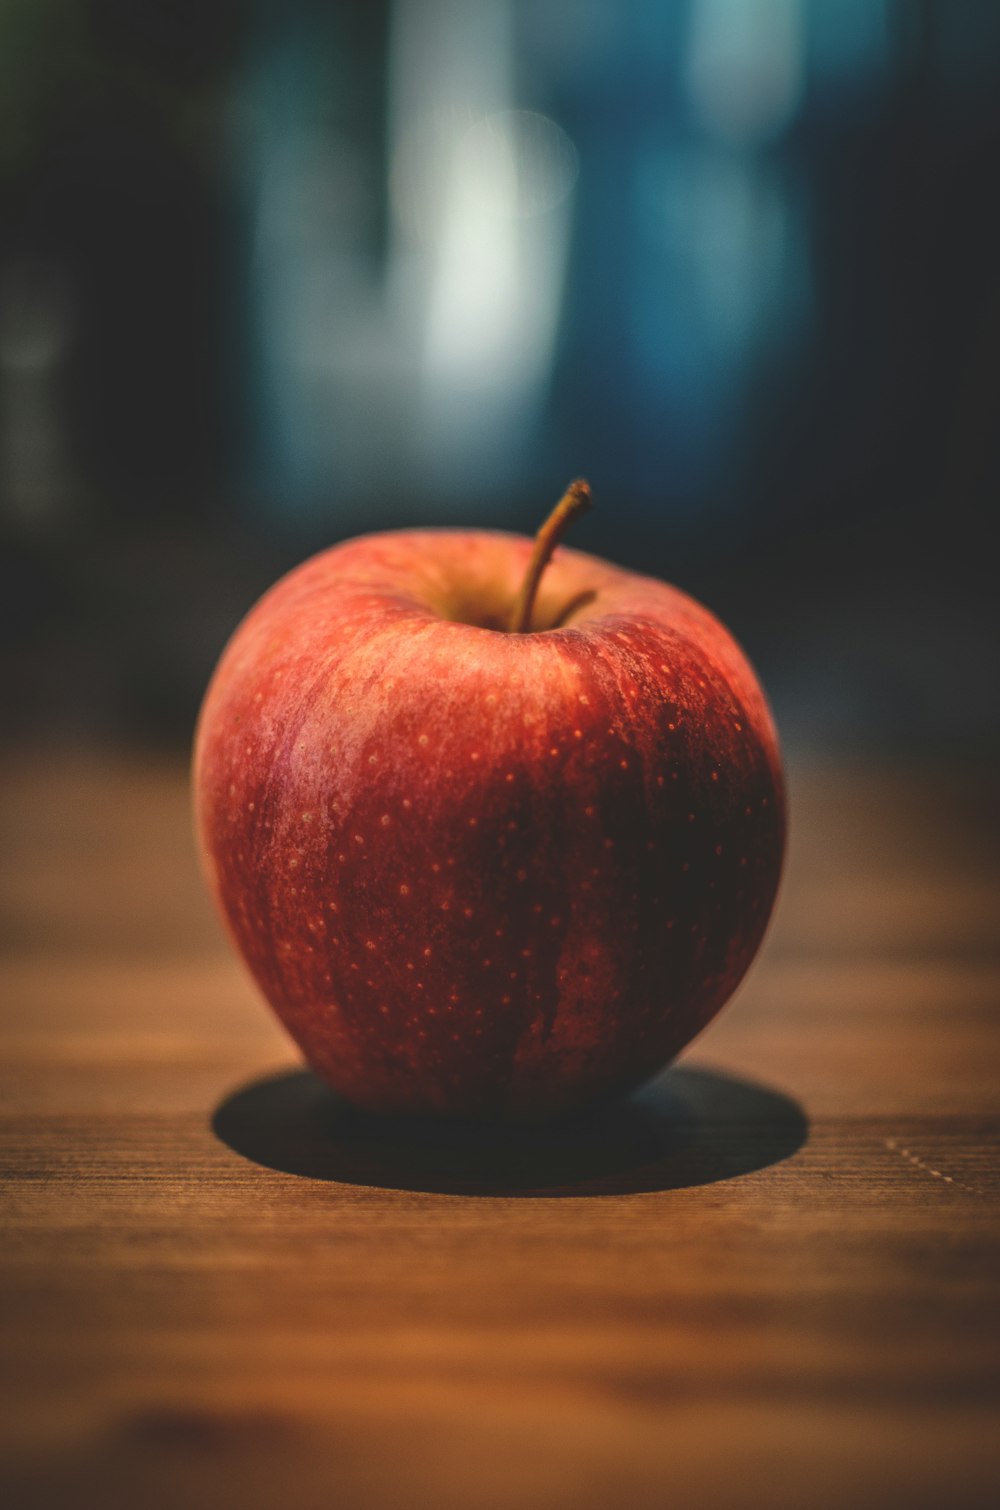 갈색 표면에 빨간 사과